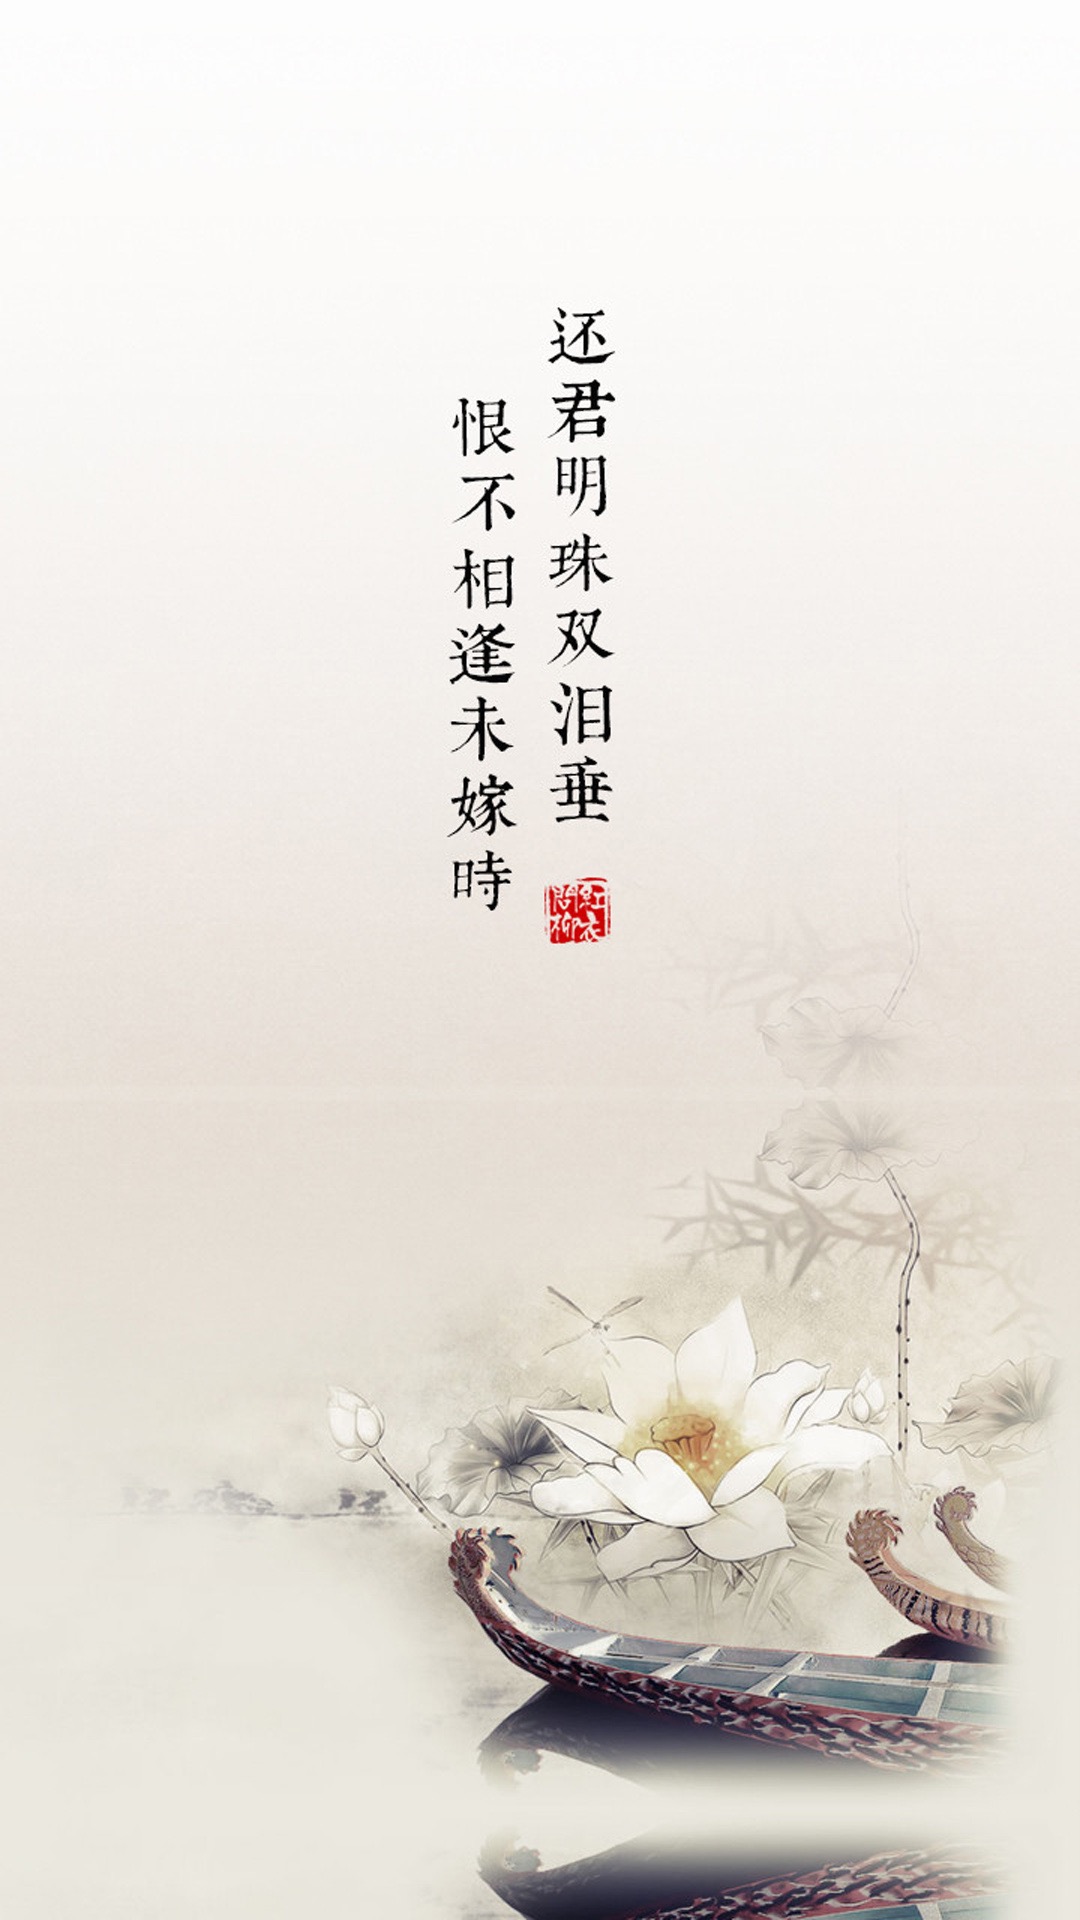 中国风诗词文字iphoneplus壁纸下载,桌面壁纸手机图片